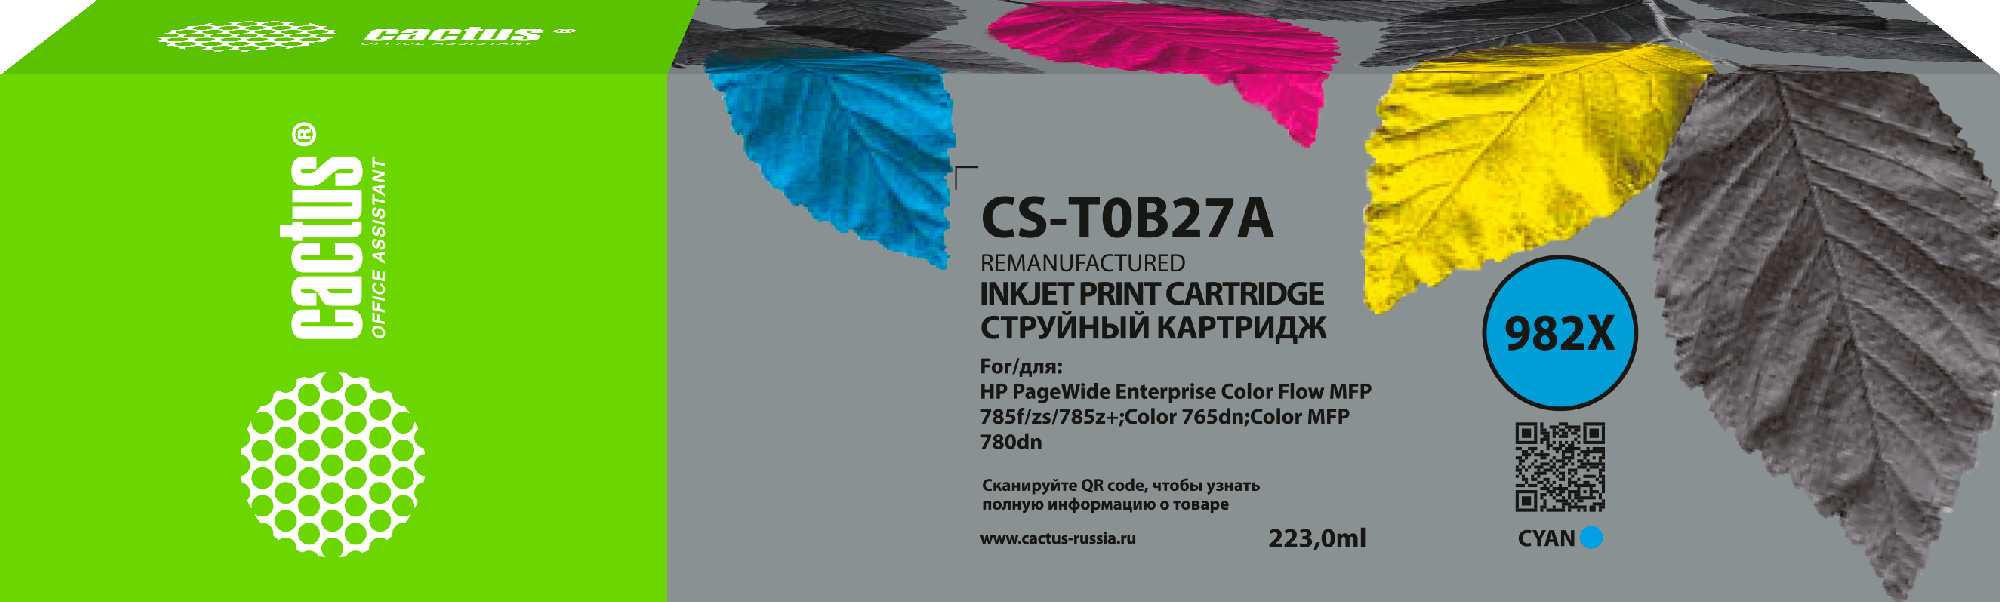   Cactus CS-T0B27A 982X  (223)  HP PageWide 765dn/780 Enterprise Color